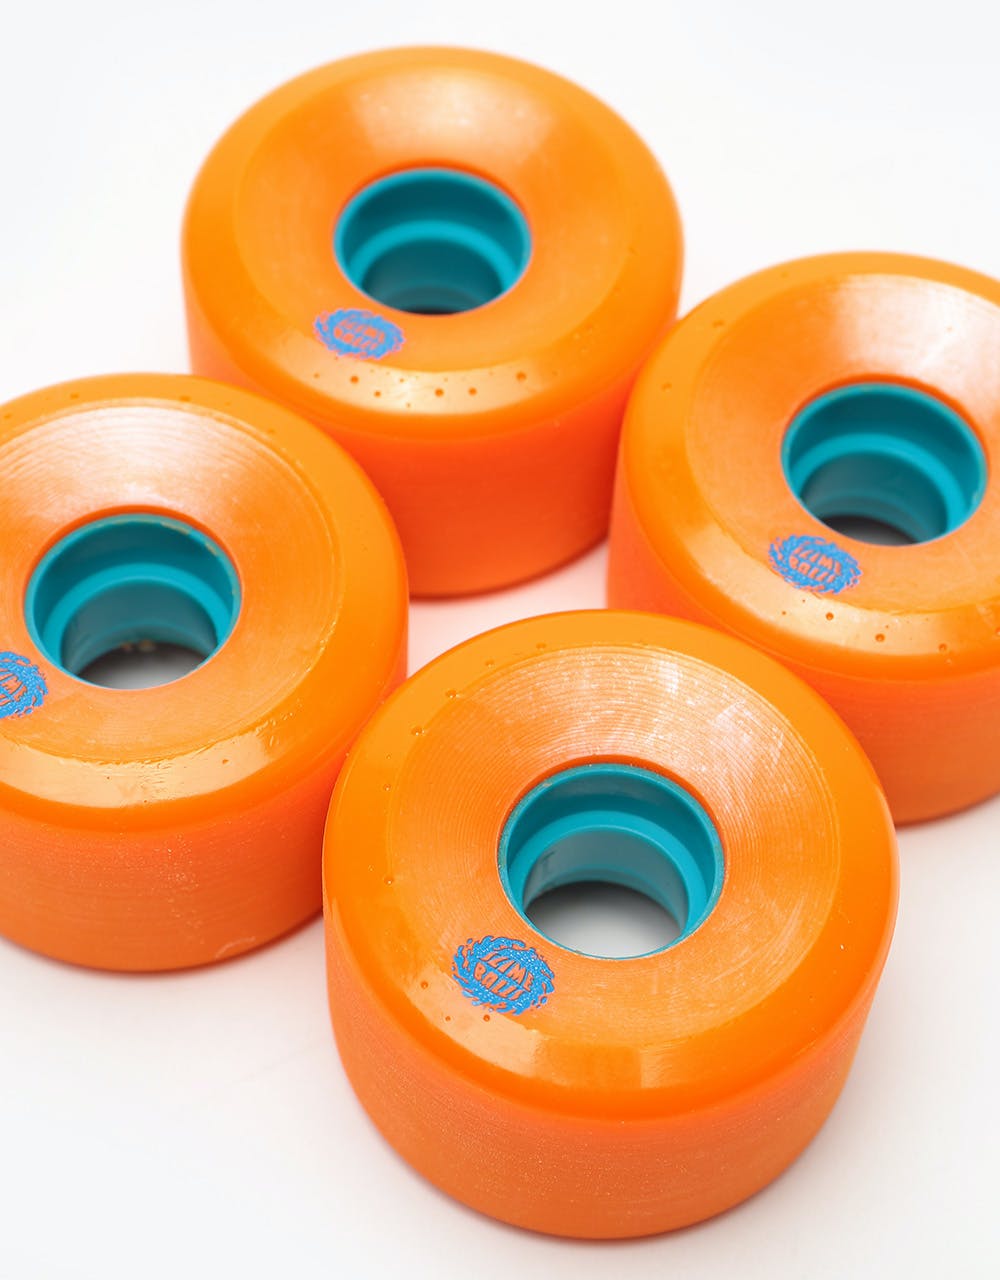 Santa Cruz Slime Balls OG Slime 78a Skateboard Wheel - 60mm